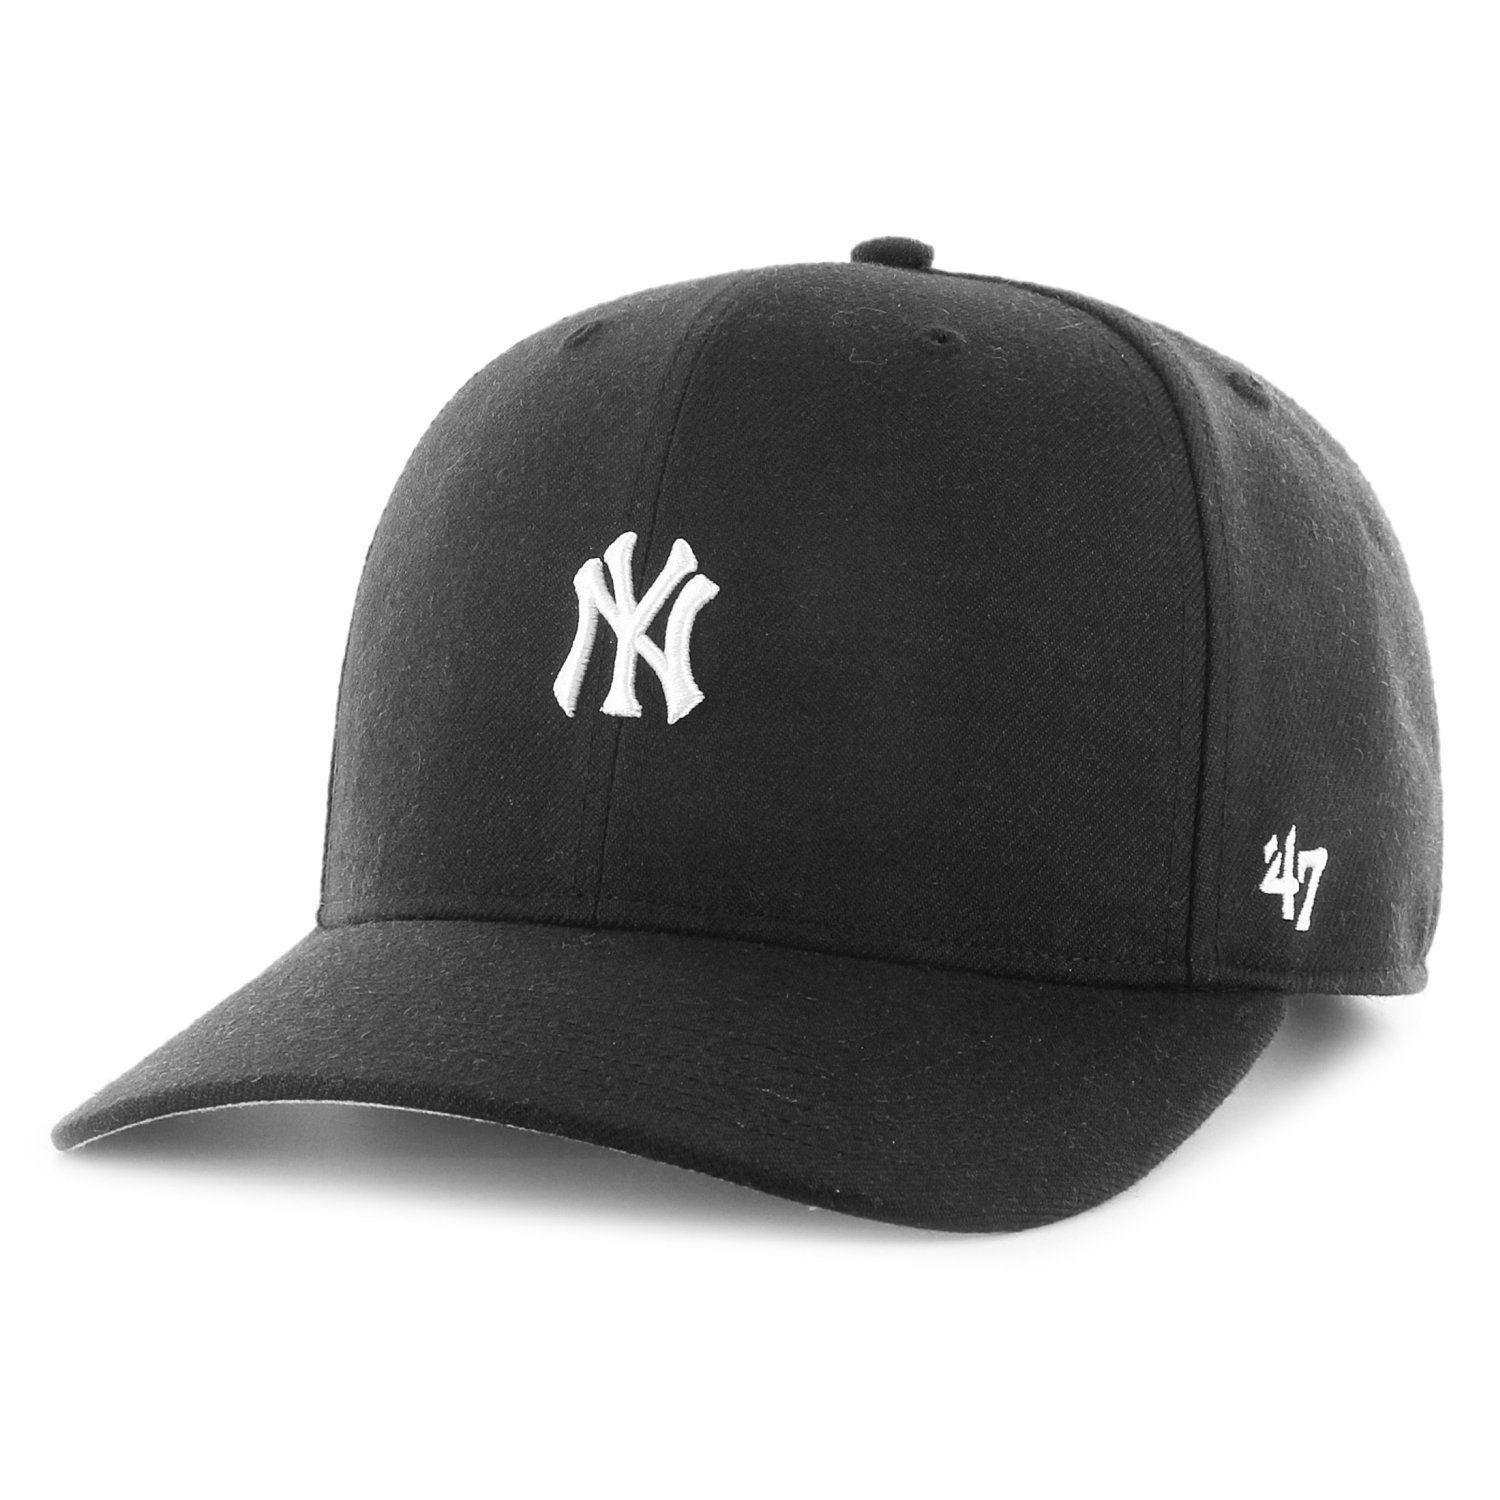 Profile BASE RUNNER Brand Low '47 York Snapback Yankees New Cap